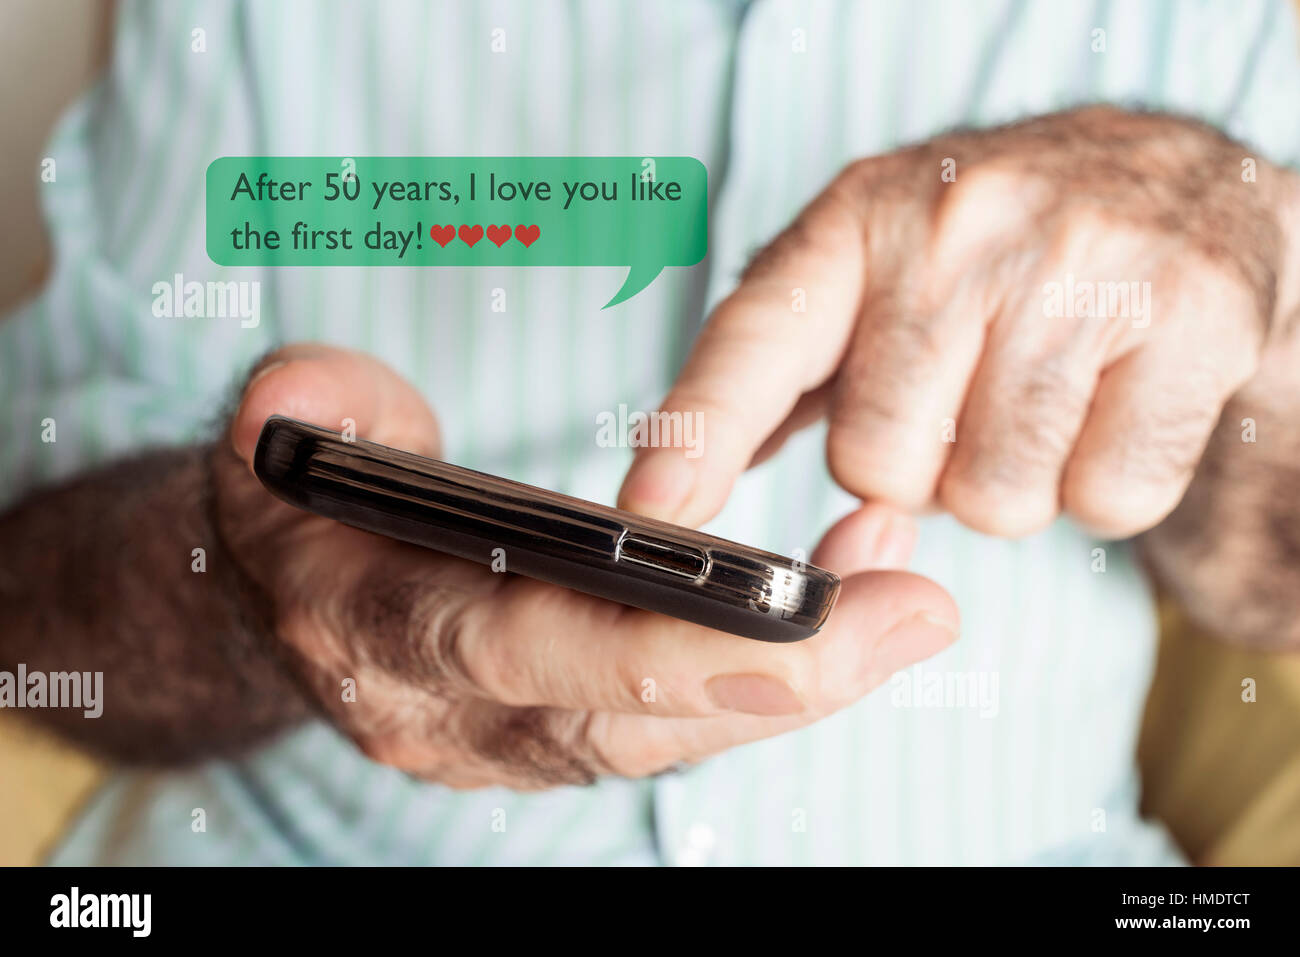 Nahaufnahme von einem alten kaukasischen Mann senden oder eine SMS-Nachricht in sein Smartphone mit dem Text zu lesen, nach 50 Jahren ich dich wie am ersten Tag Liebe Stockfoto